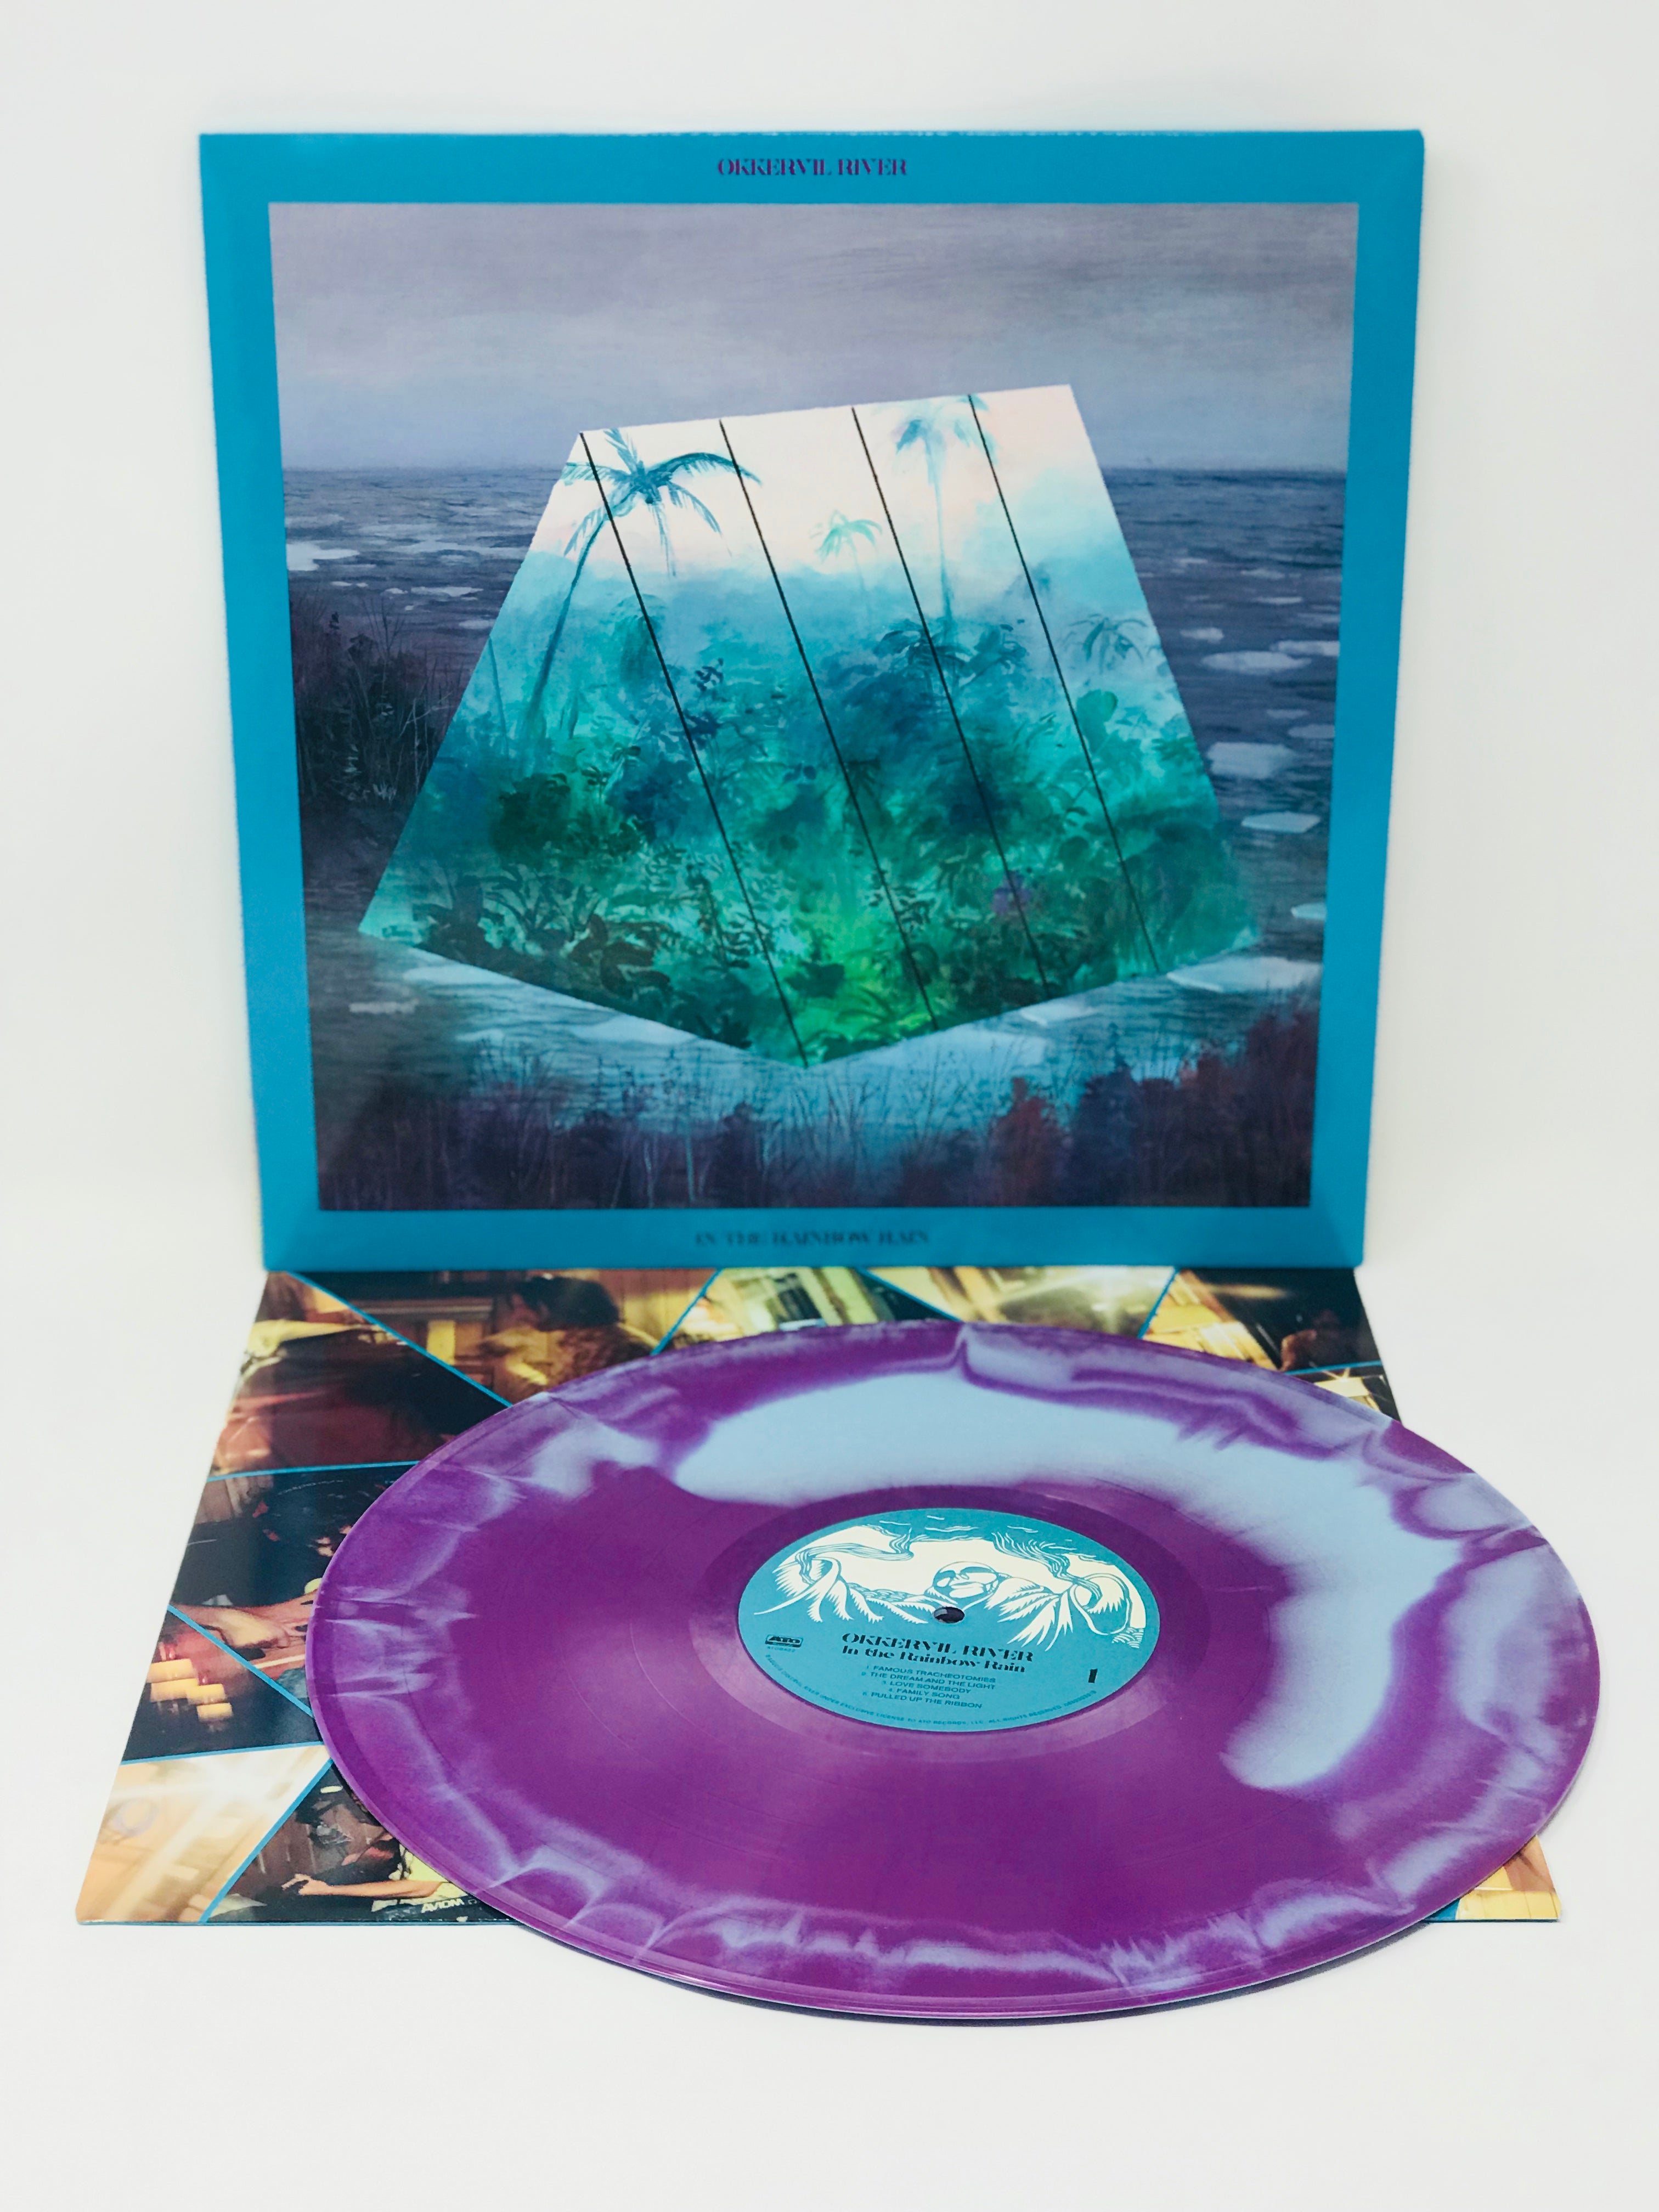 Okkervil River - In The Rainbow Rain (Ltd. Ed. purple/blue vinyl) - Blind Tiger Record Club